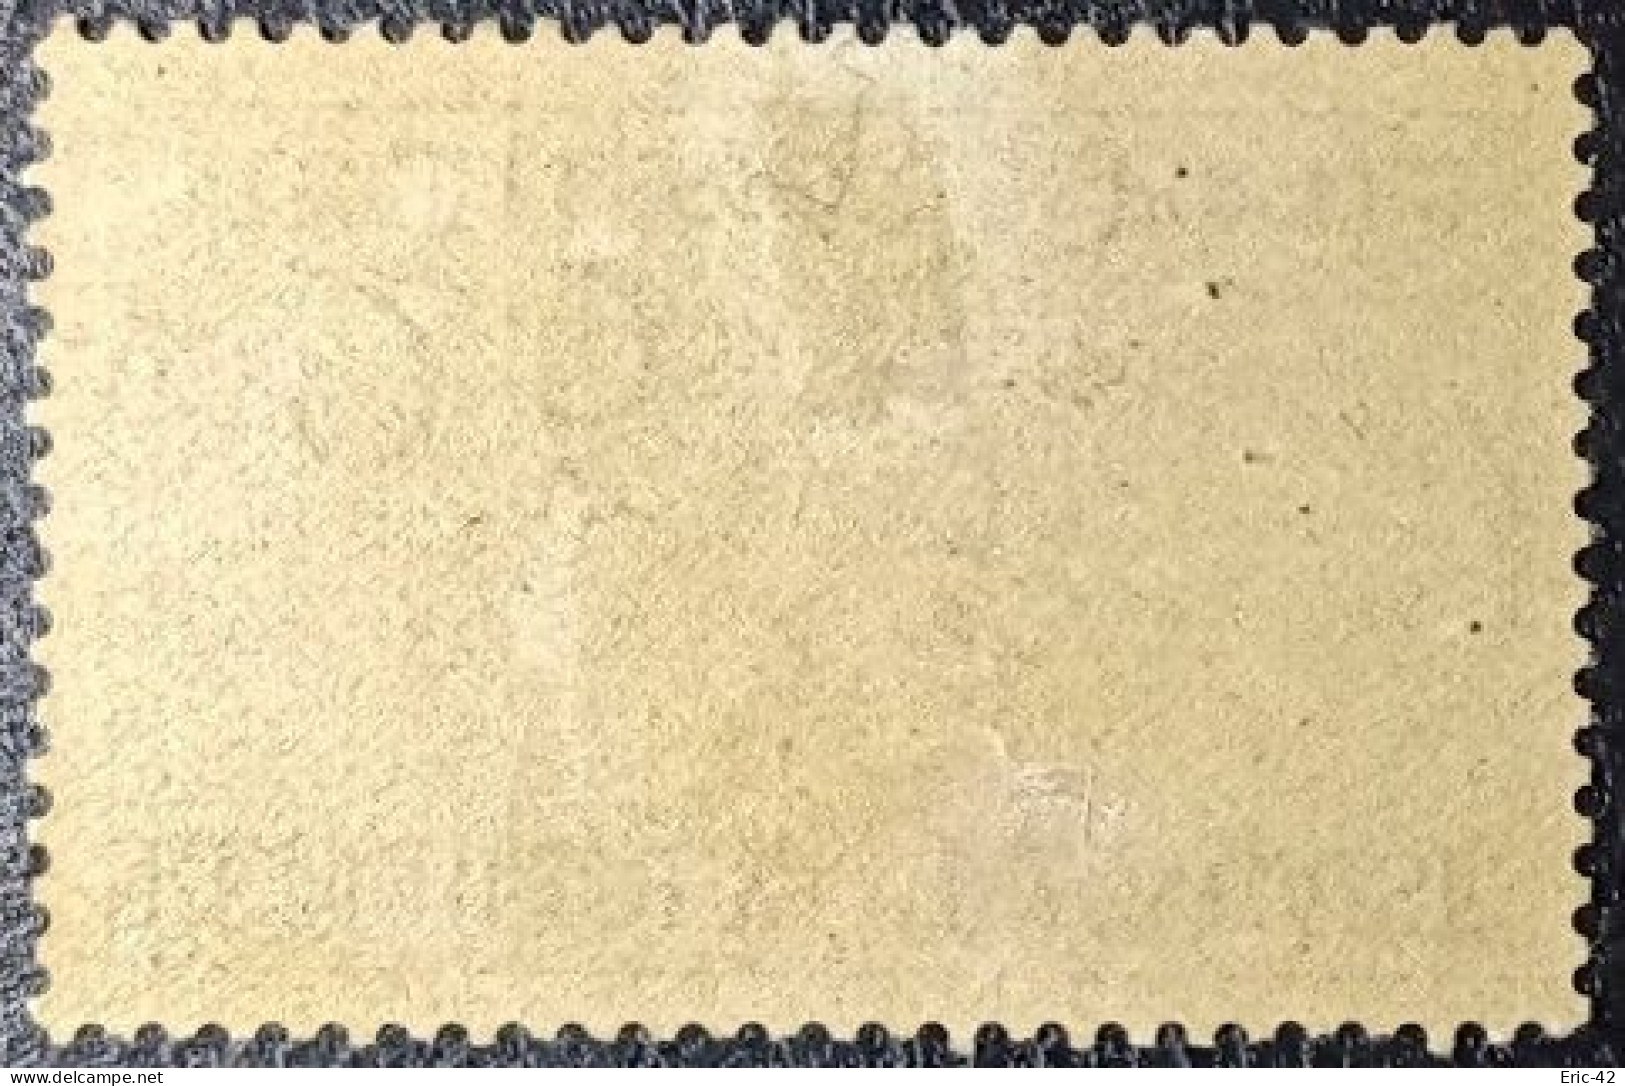 FRANCE N° 961 J.O. D'Helsinki. 25Fr. Vert Foncé Et Bistre Neuf(*) S.G. - Unused Stamps